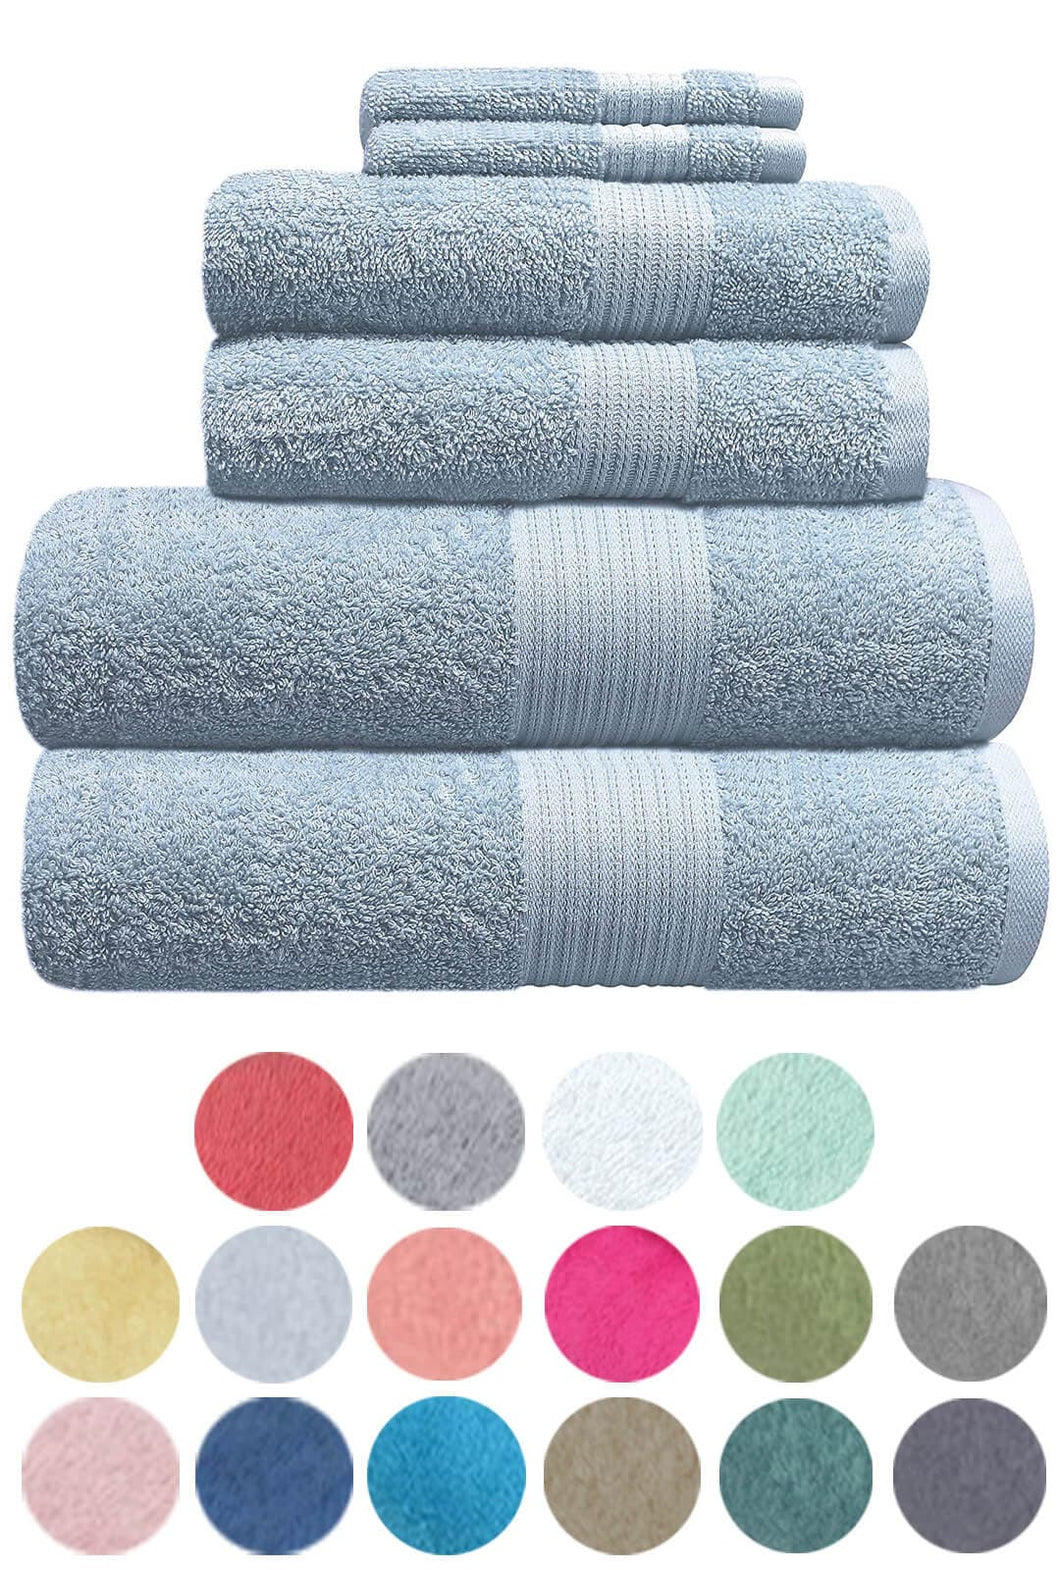 8 Piece Value Range Towels Bale Set 100% Cotton Great Quality Towels 4 Face Cloth, 2 Hand Towel, 2 Bath Towel